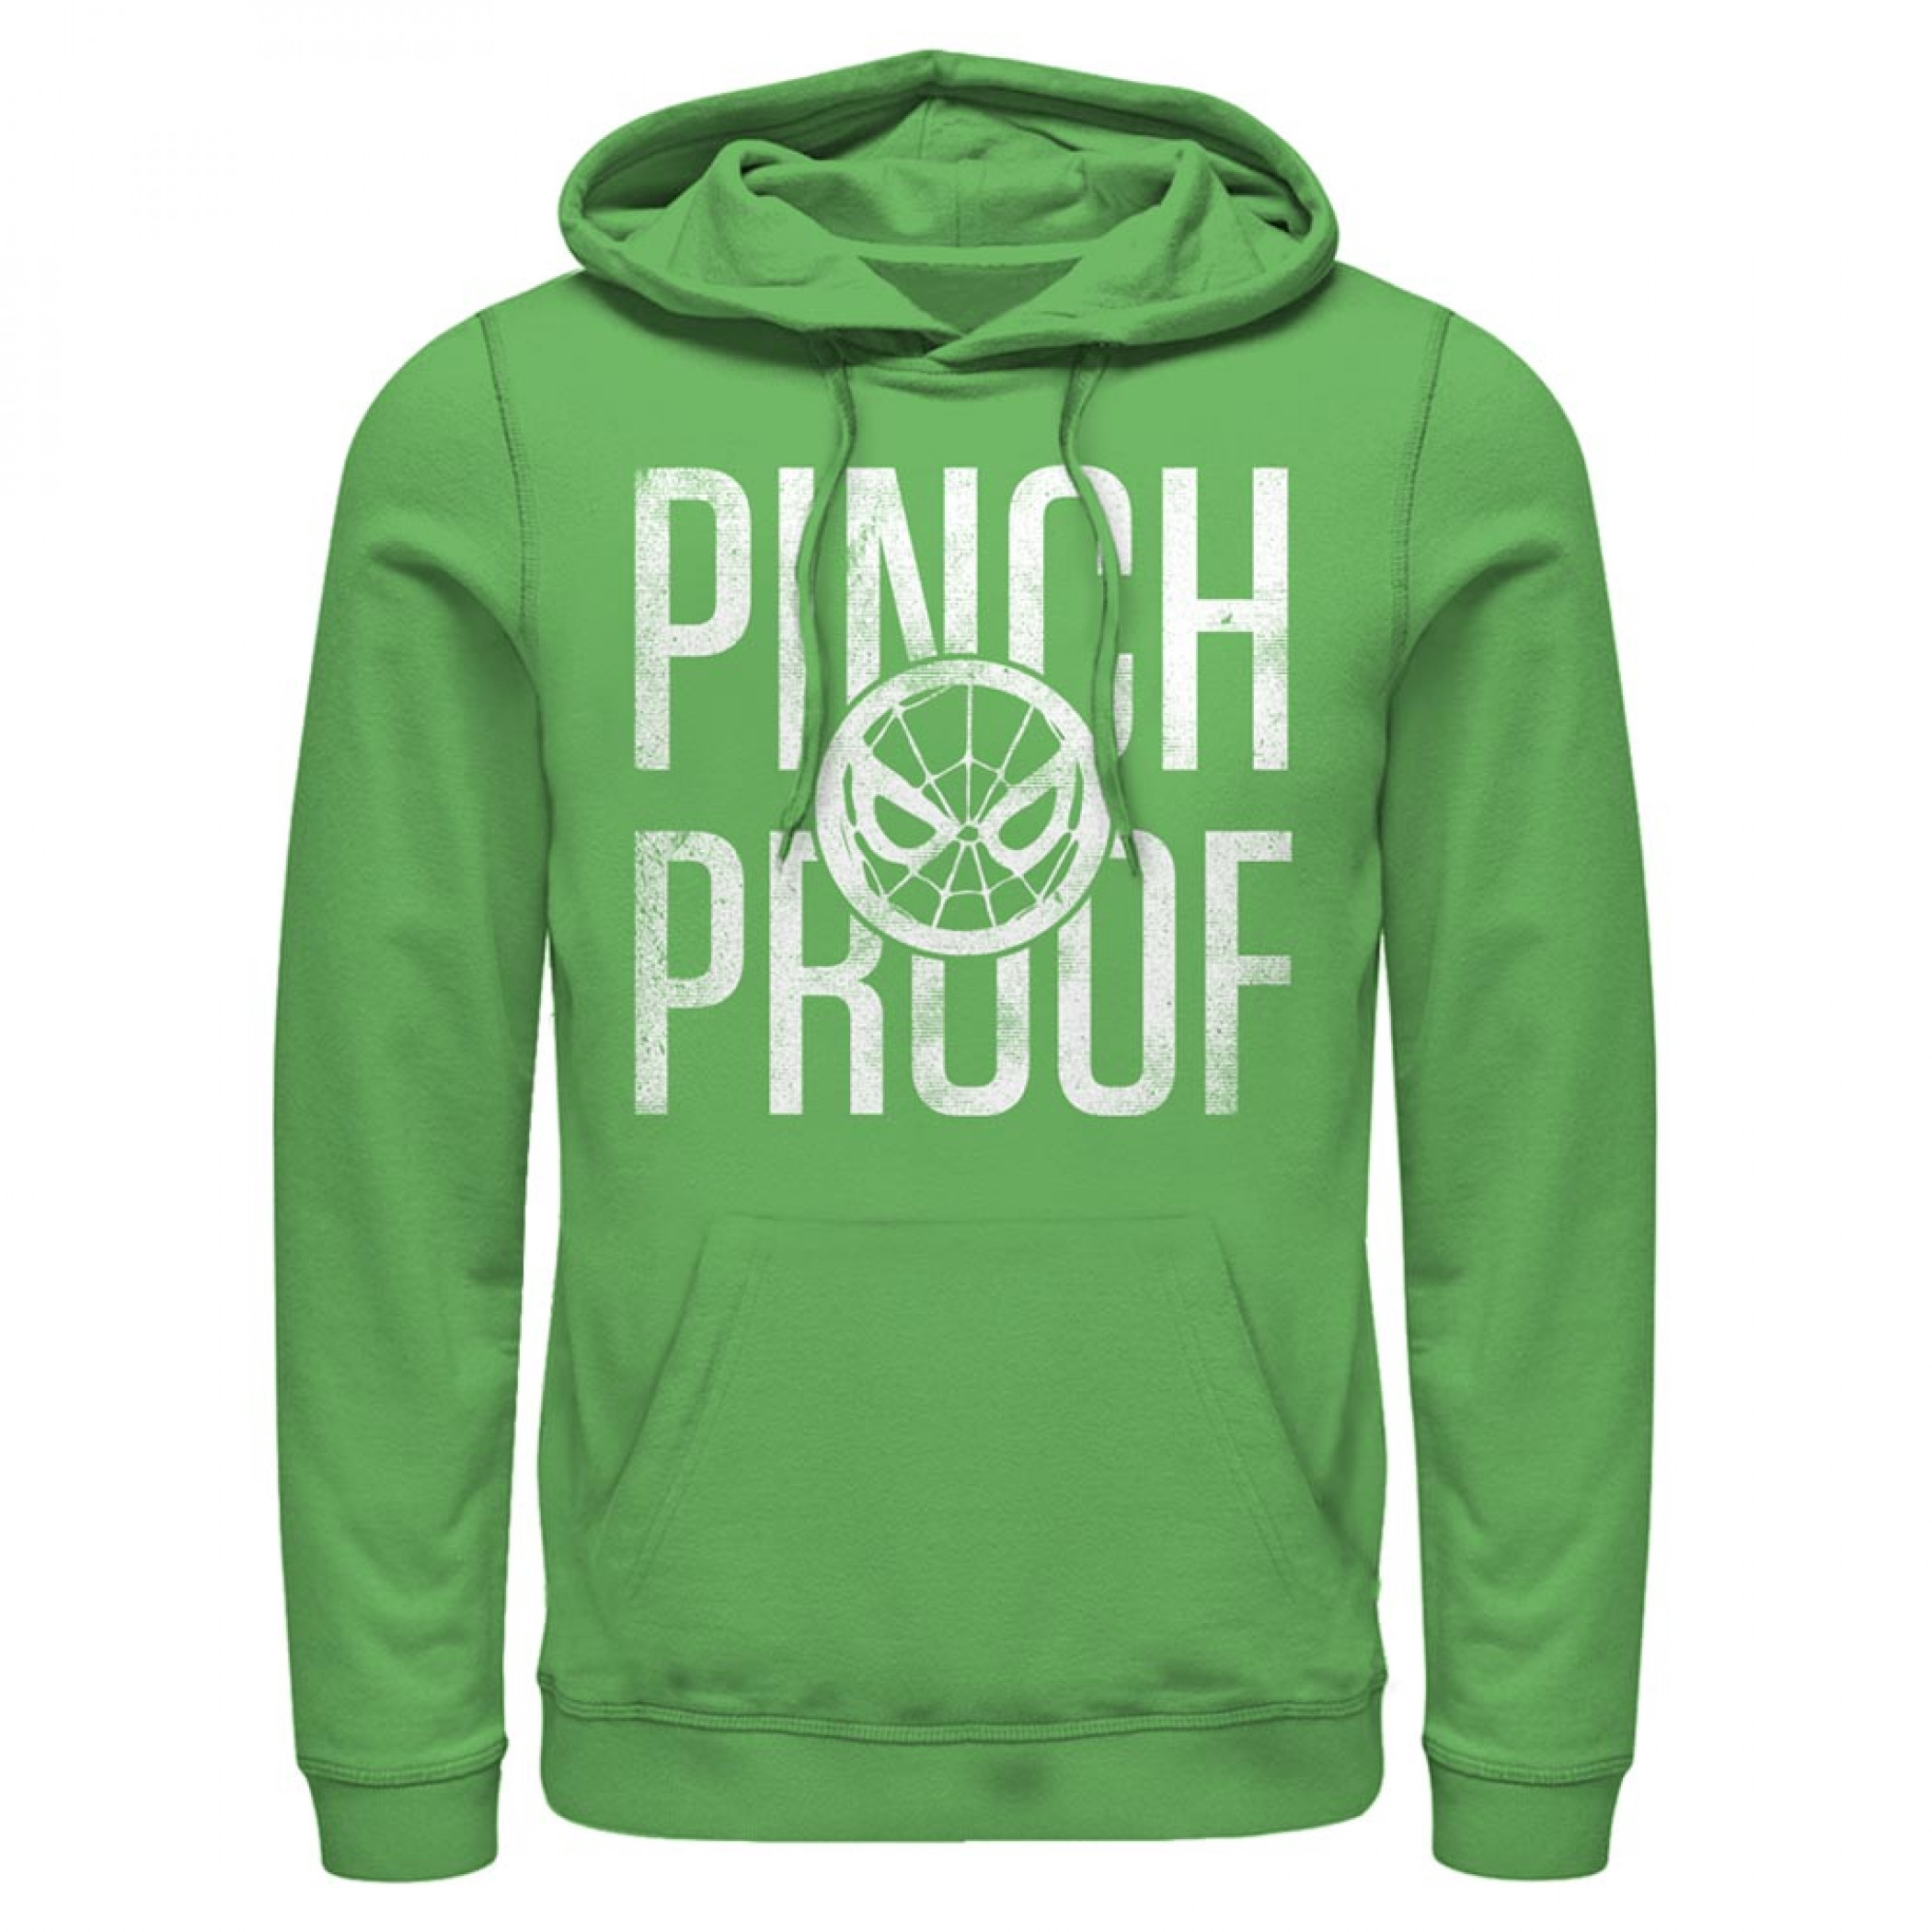 Spider-Man Pinch Proof Green Hoodie